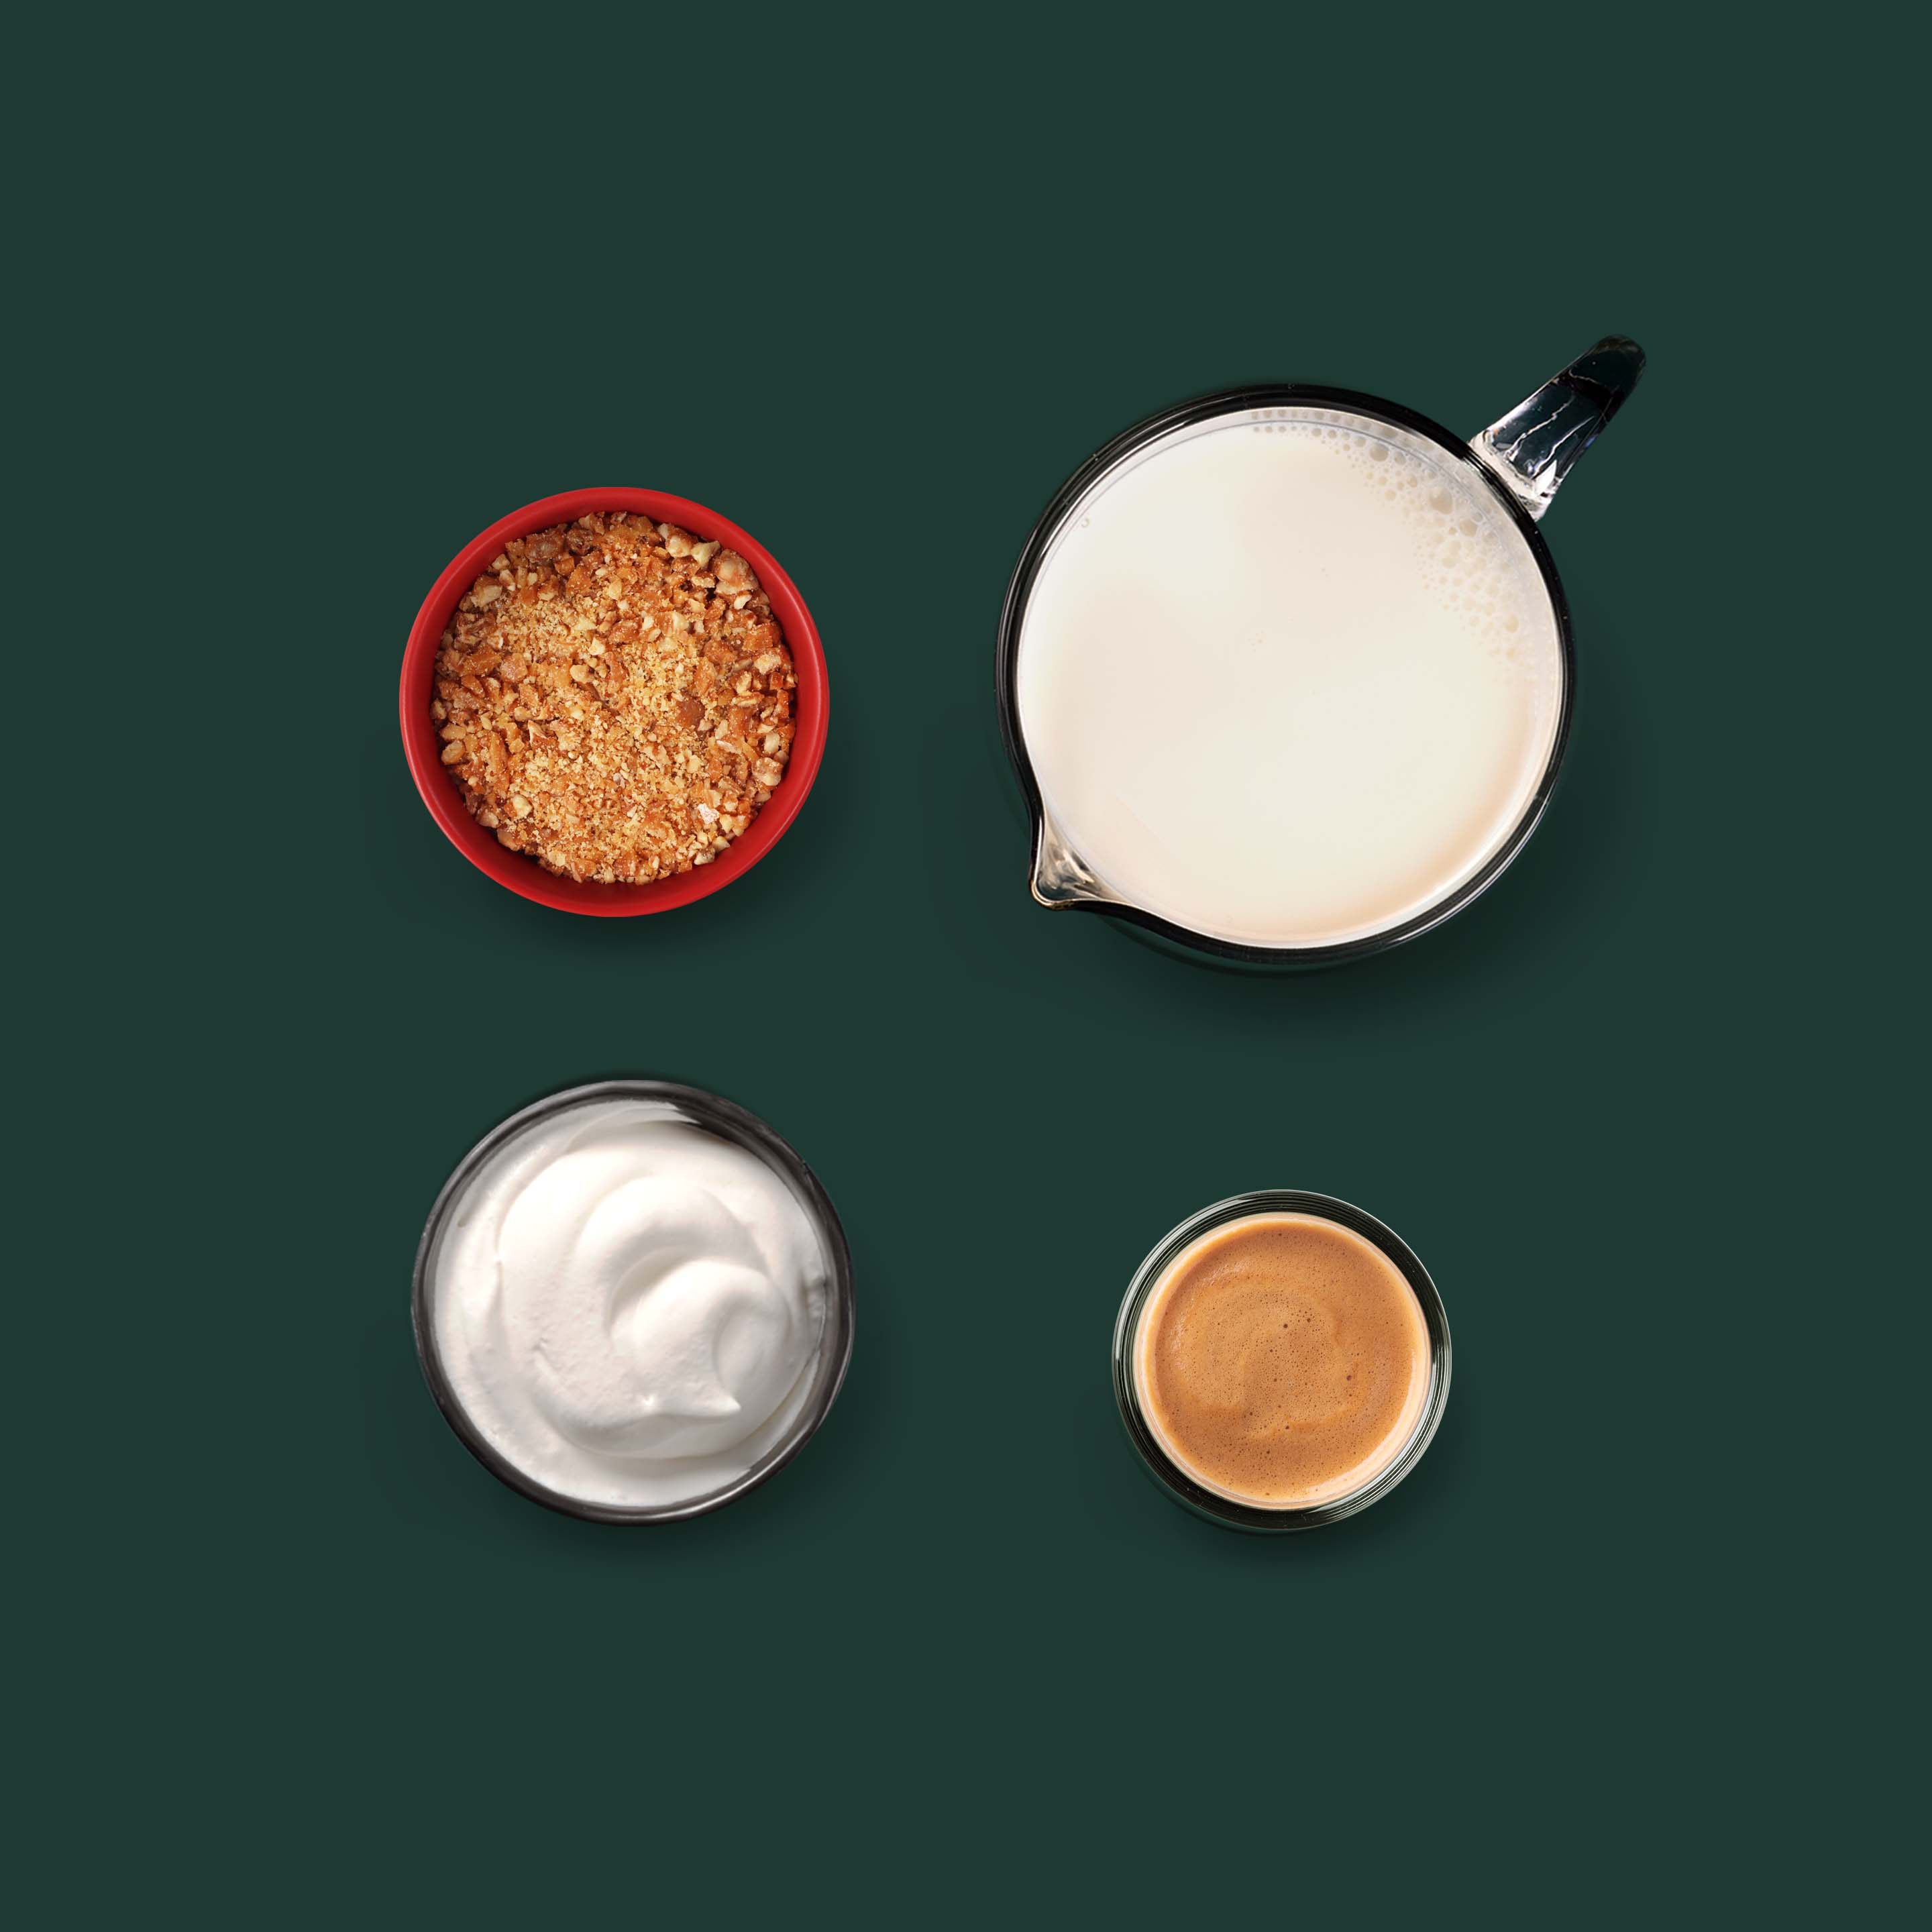 Recette latte noisette et caramel salé - Marie Claire